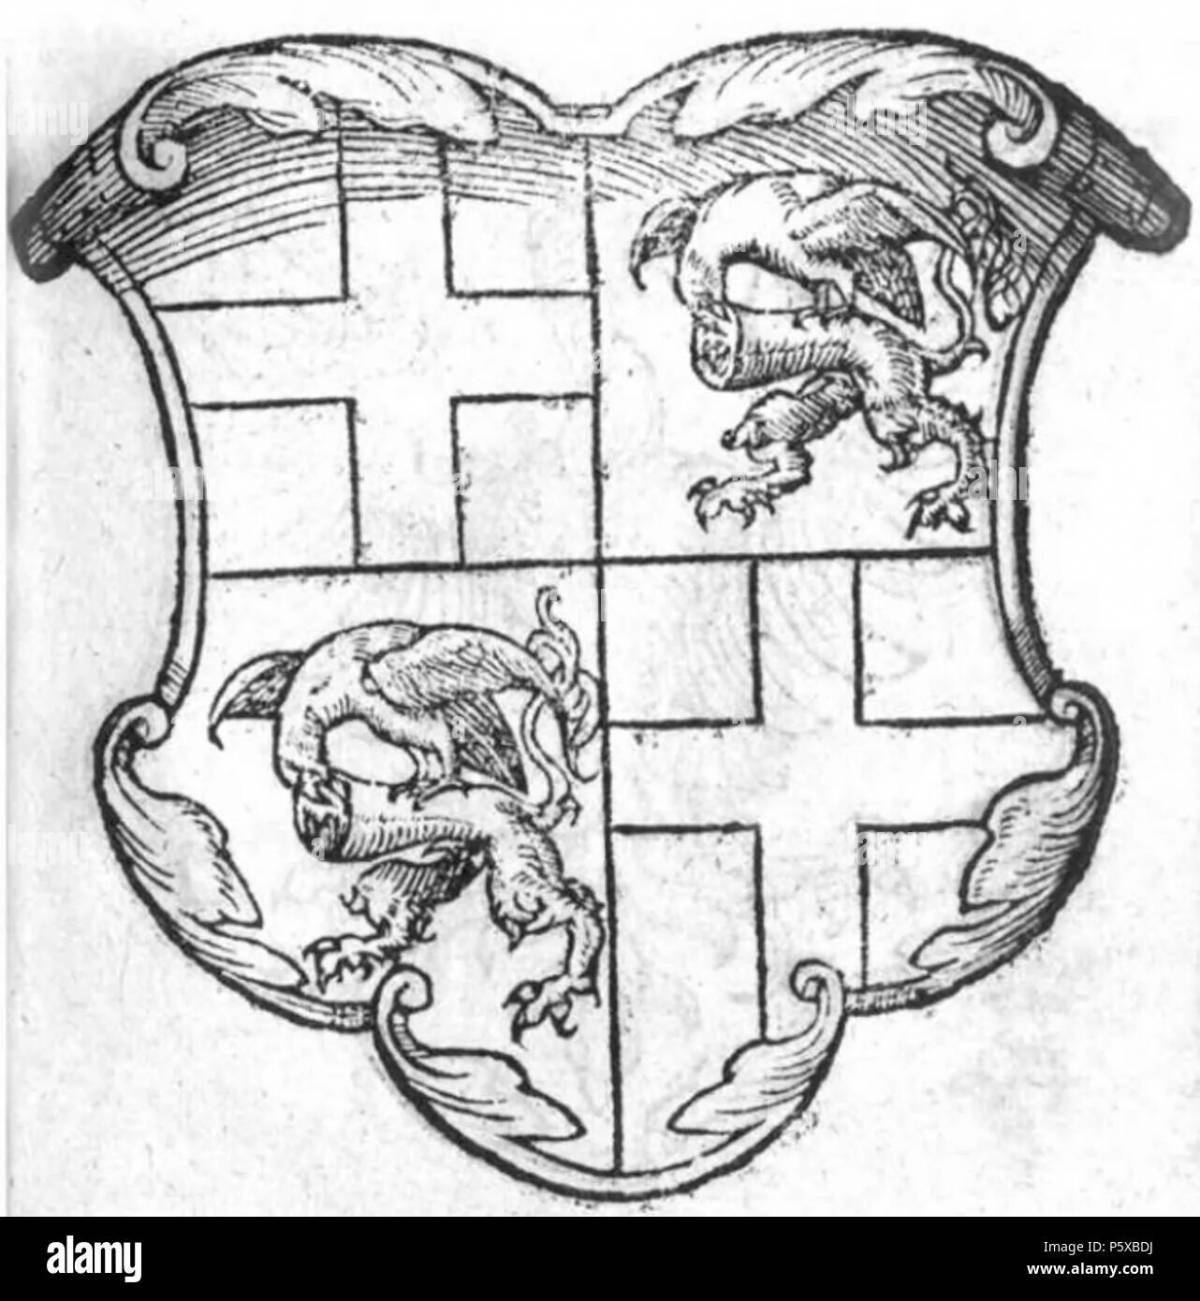 Грандиозная раскраска герб смоленска